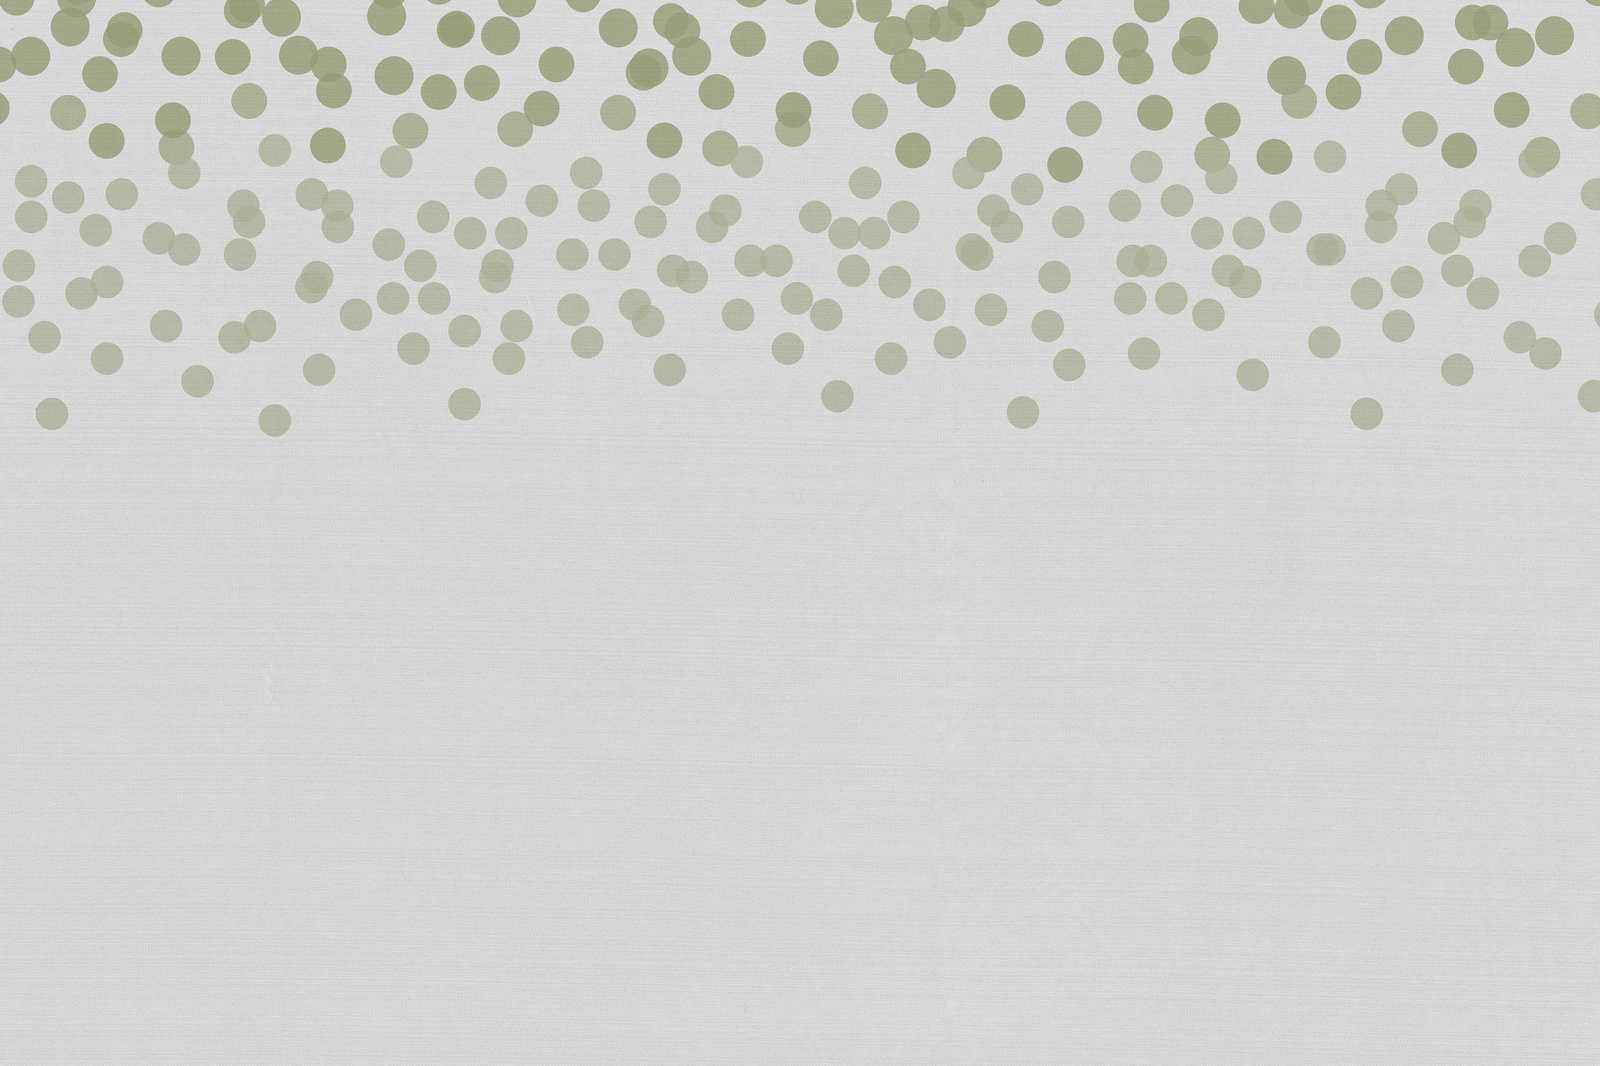             Toile avec motif de points discrets | vert, gris - 0,90 m x 0,60 m
        